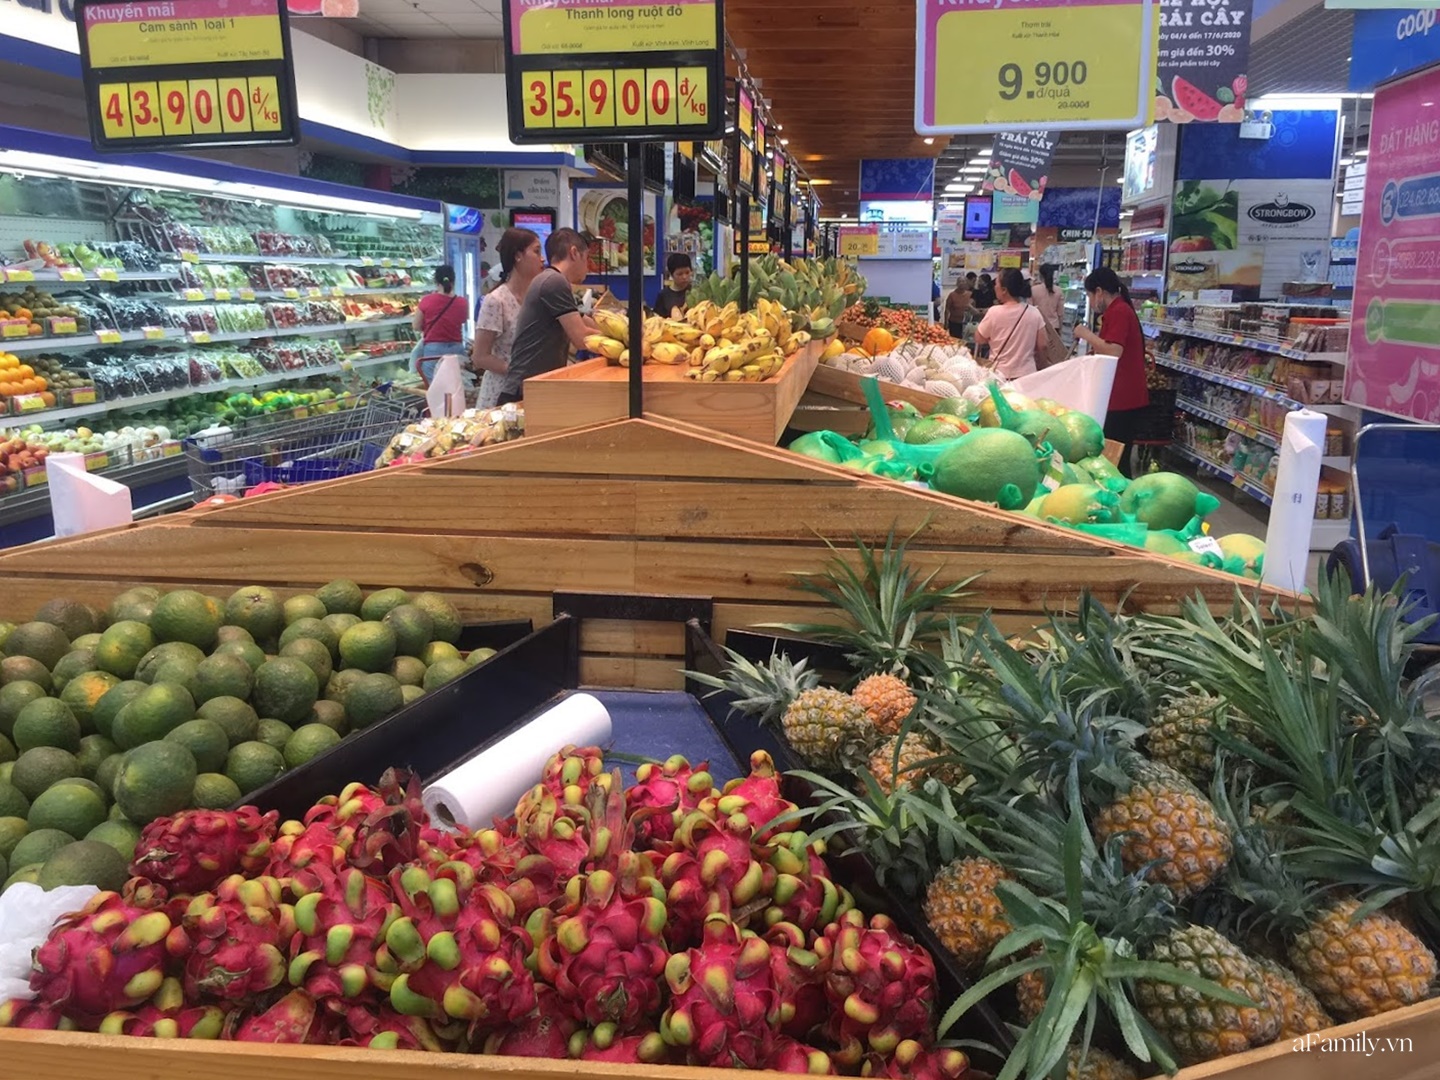 Nông sản Việt chiếm ưu thế trên kệ hàng ở các siêu thị lớn - Ảnh 2.